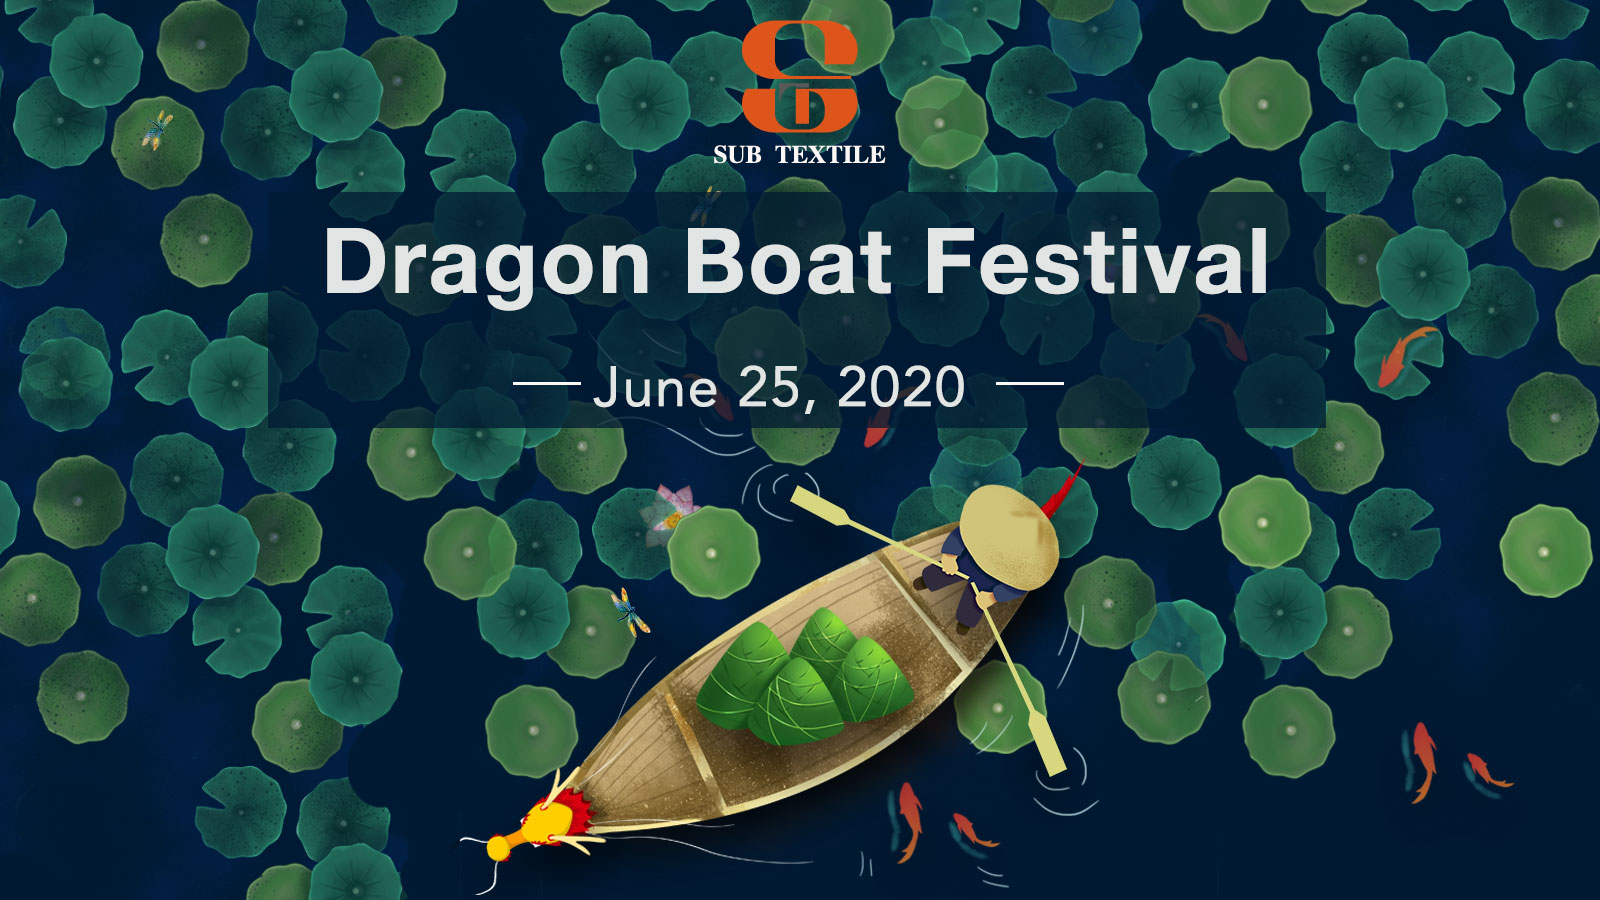 Subtextile Festival Notice：Dragon Boat Festival